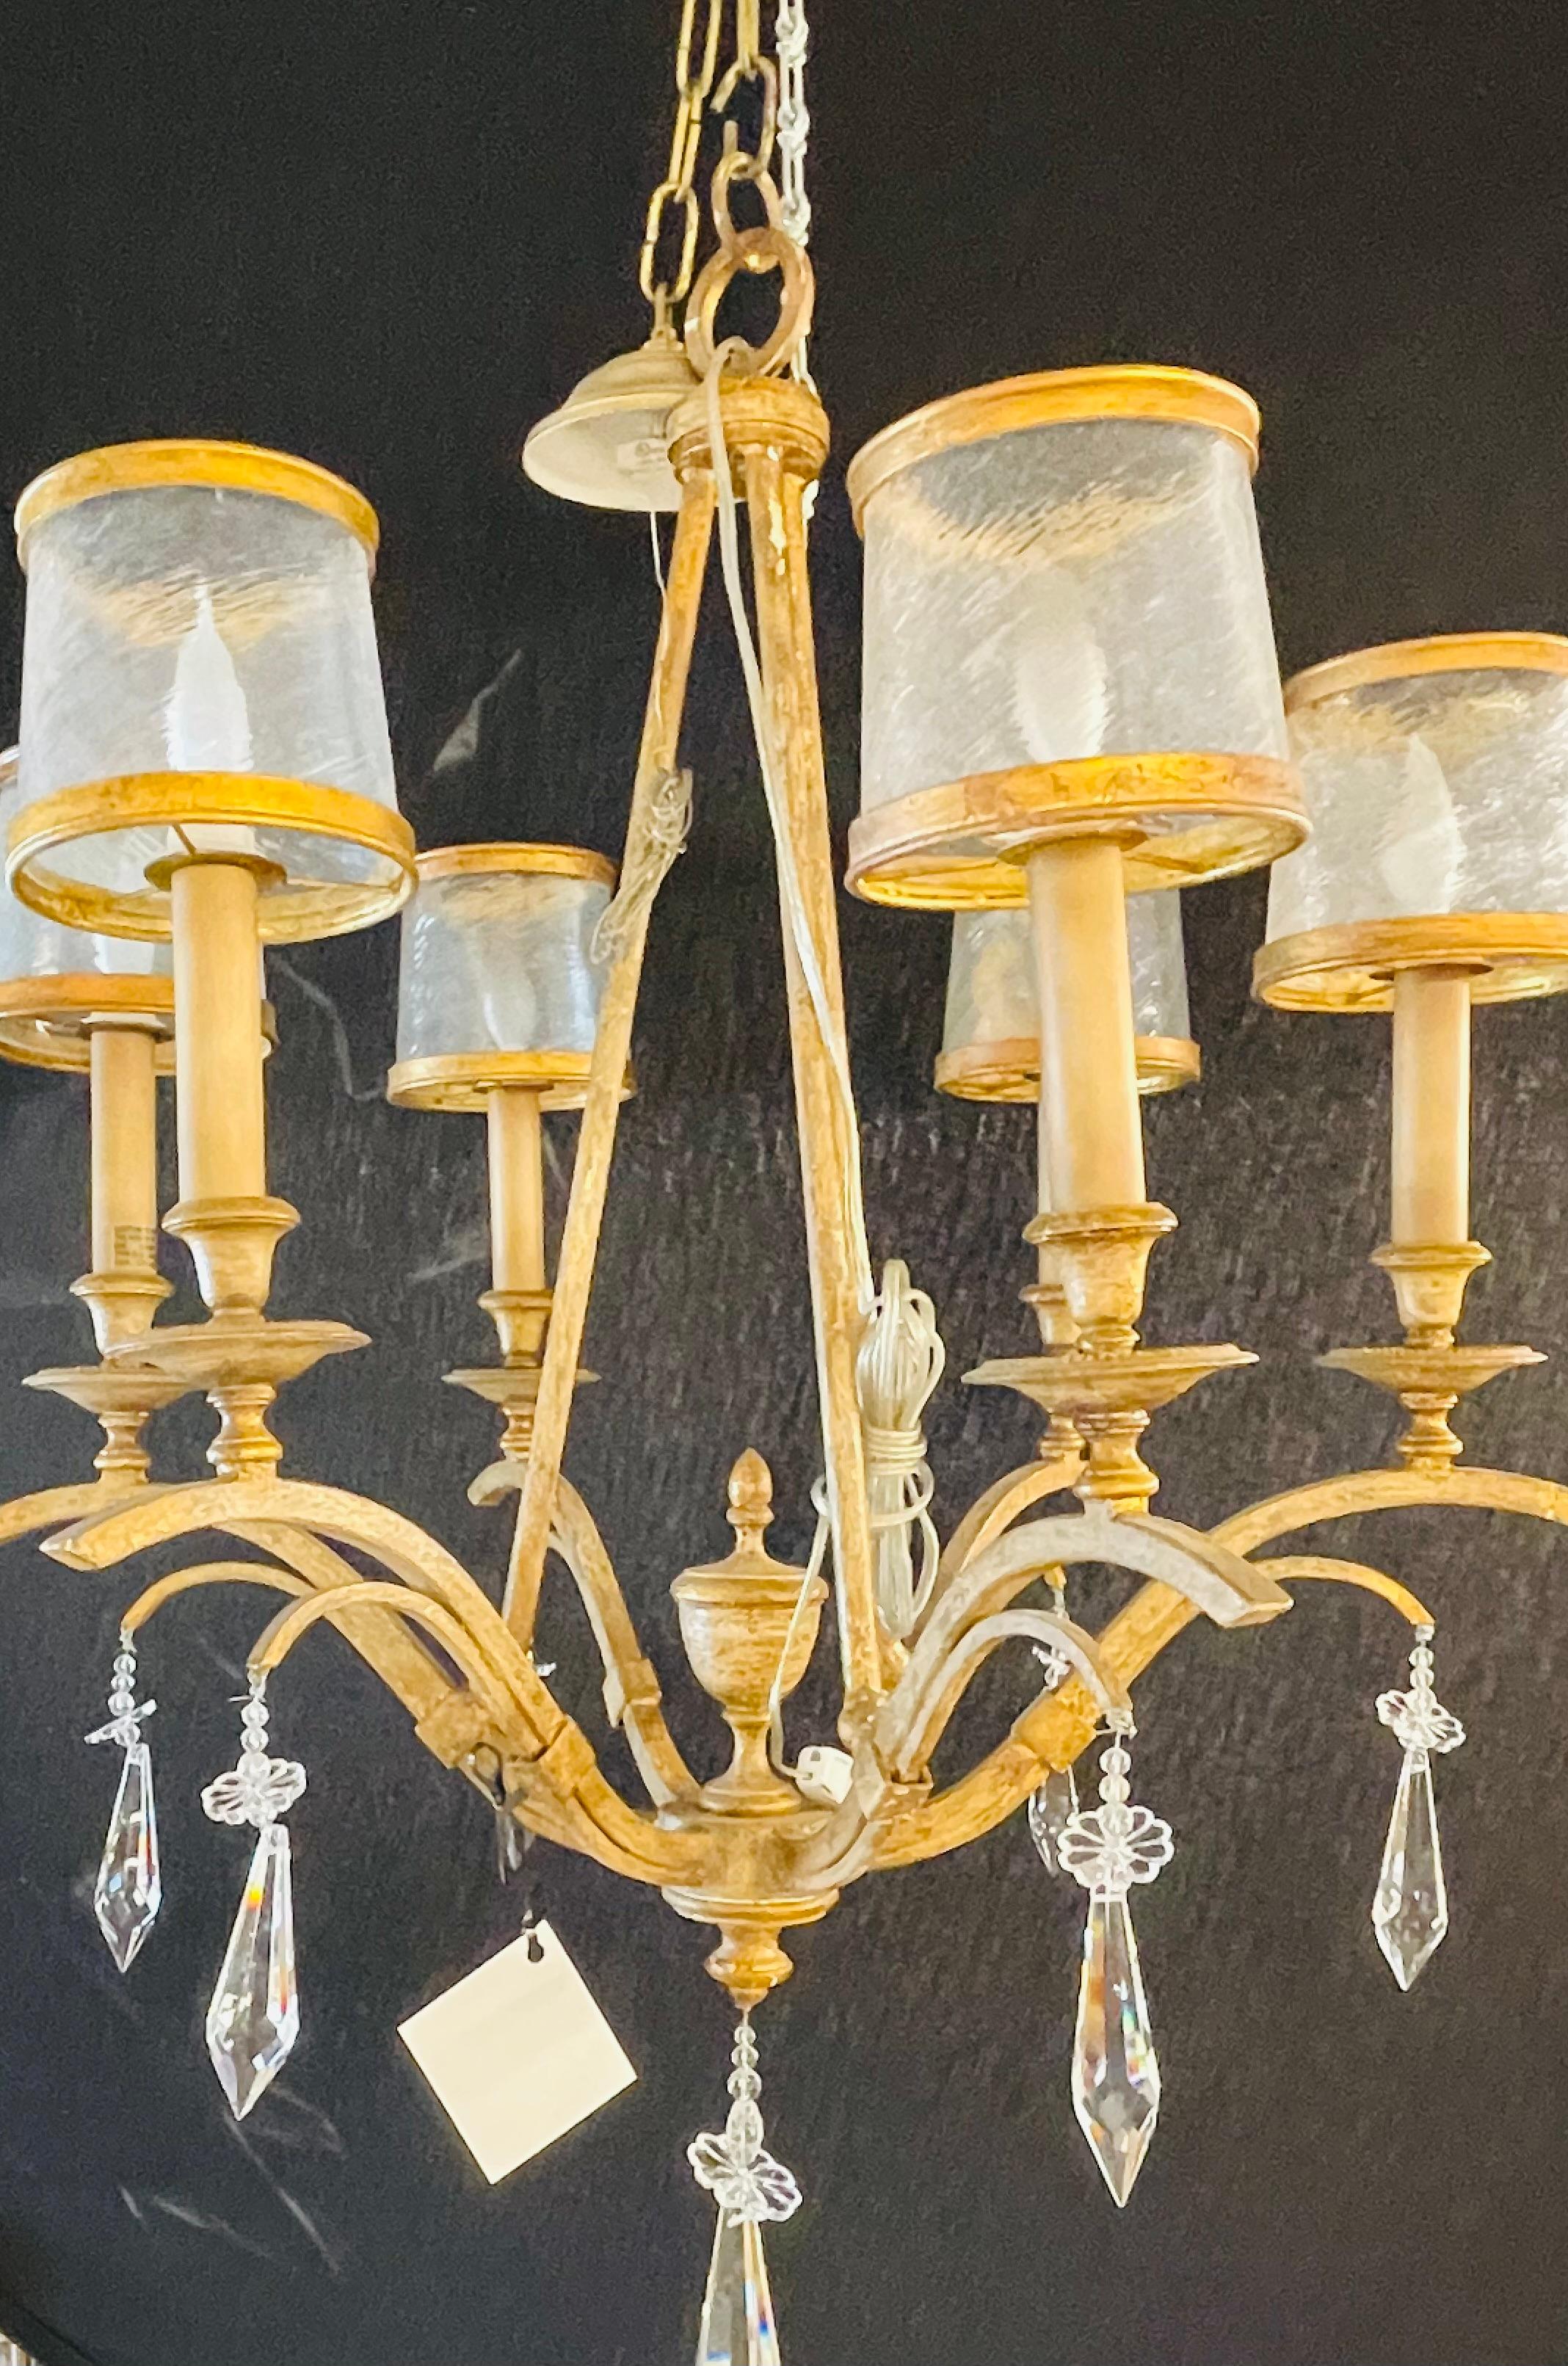 Un lustre italien en métal doré et cristal avec des abat-jour en verre. Ce plafonnier récemment câblé apporte du glamour et du clinquant à toute pièce dans laquelle il est suspendu. Avec ses grands cristaux suspendus placés de manière statique pour